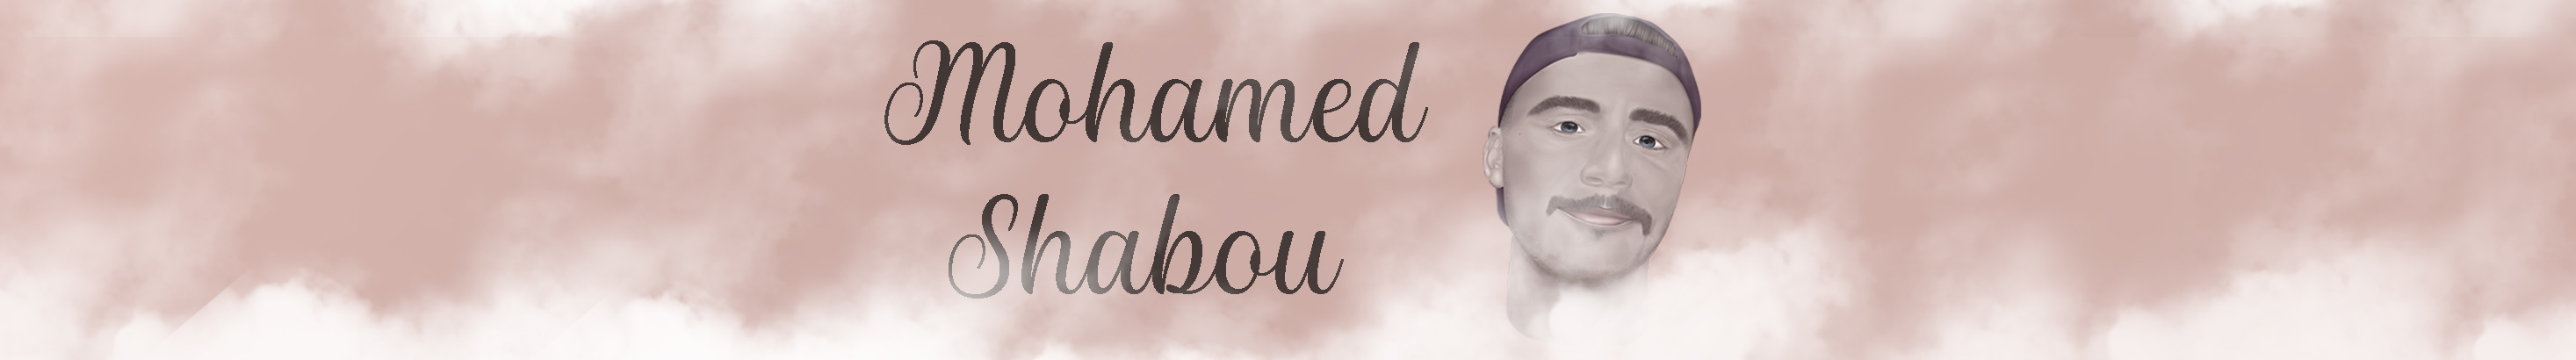 Mohamed Shabou's profile banner